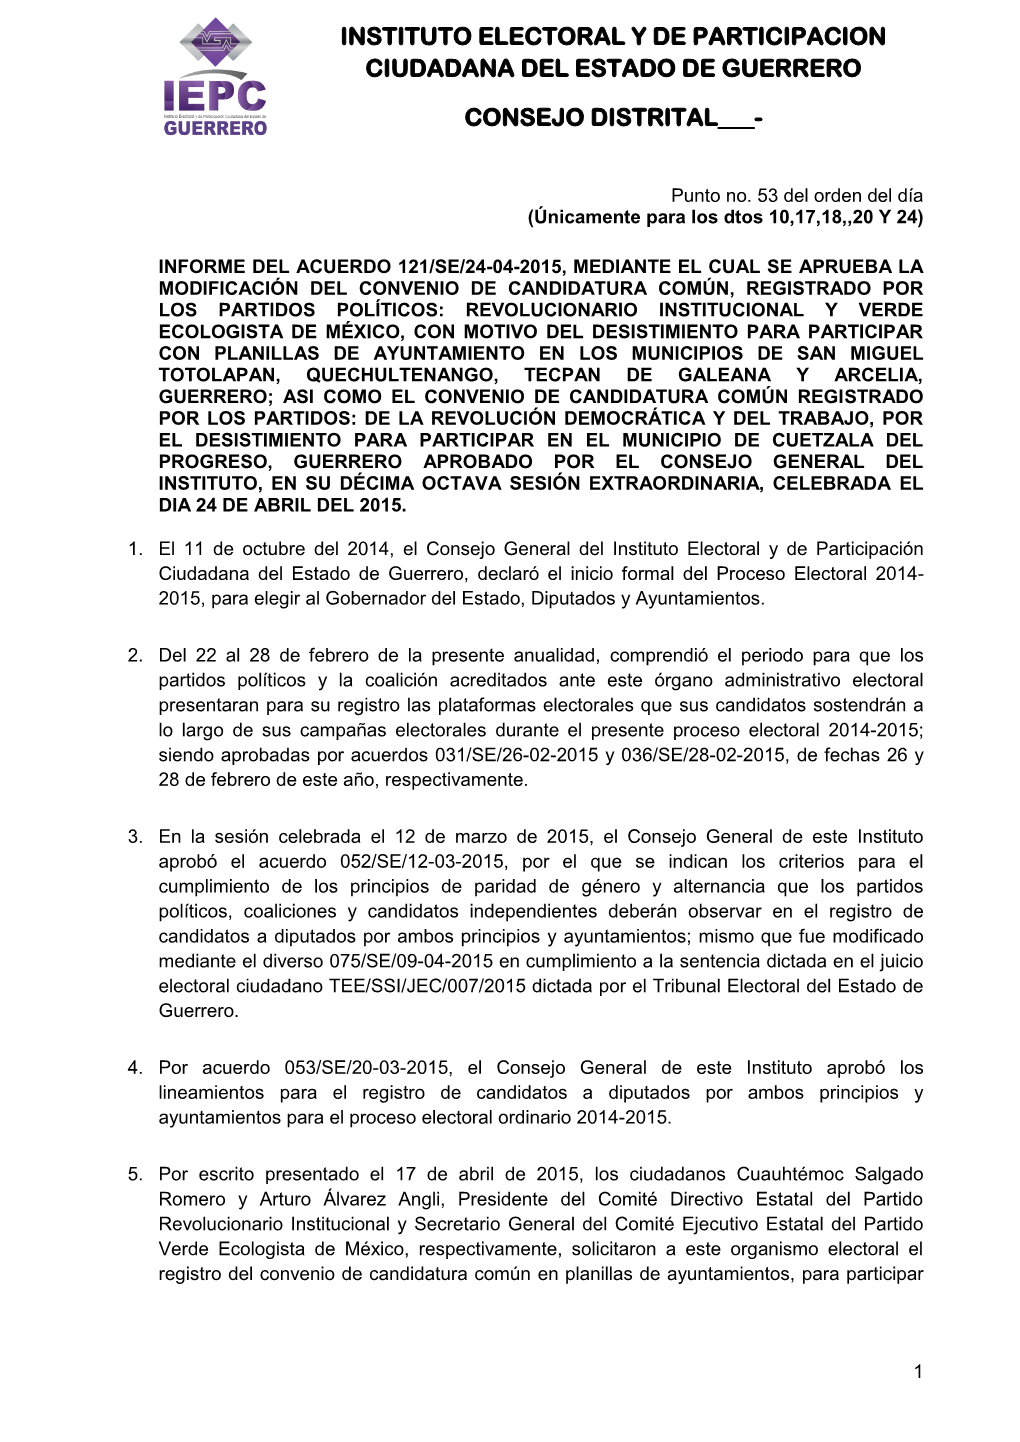 Instituto Electoral Y De Participacion Ciudadana Del Estado De Guerrero